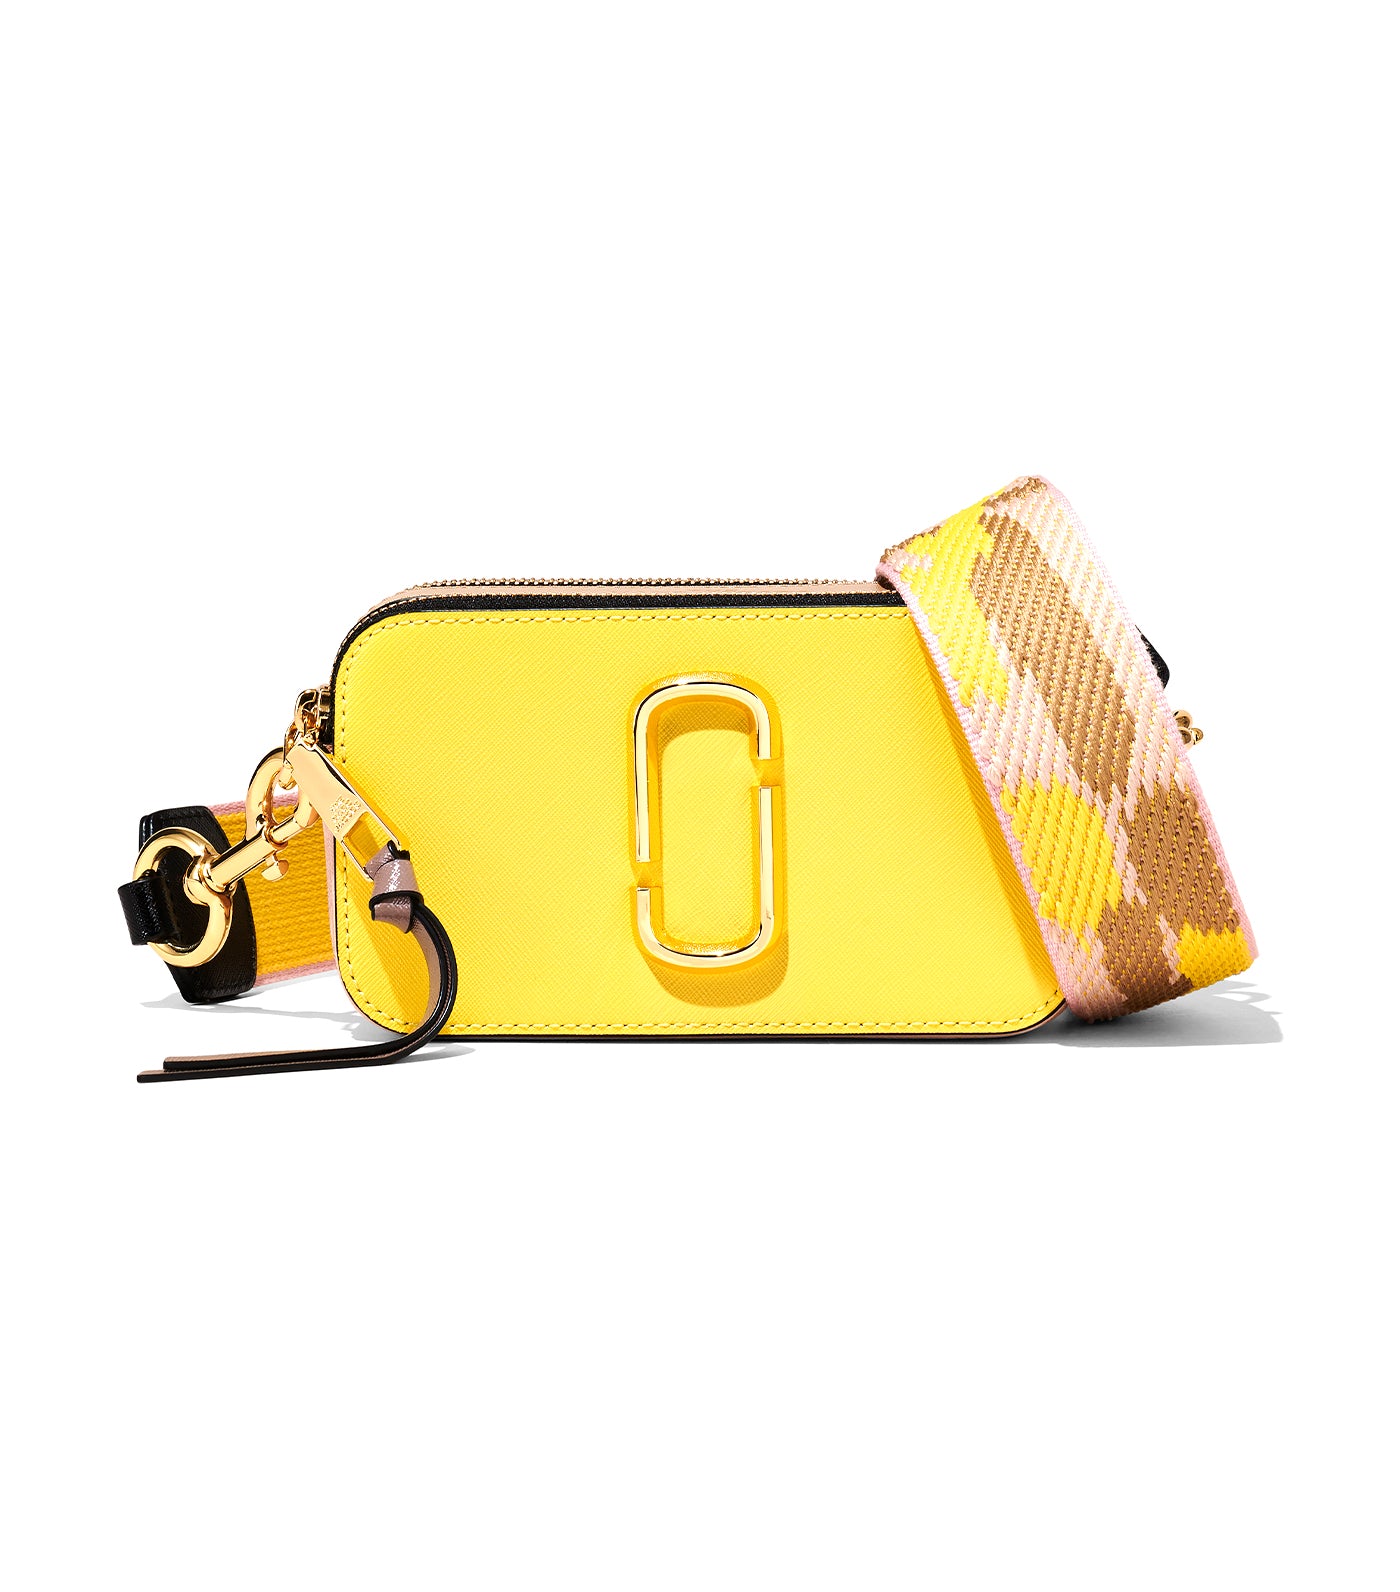 The Snapshot Small Camera Bag Yellow Cream Multi